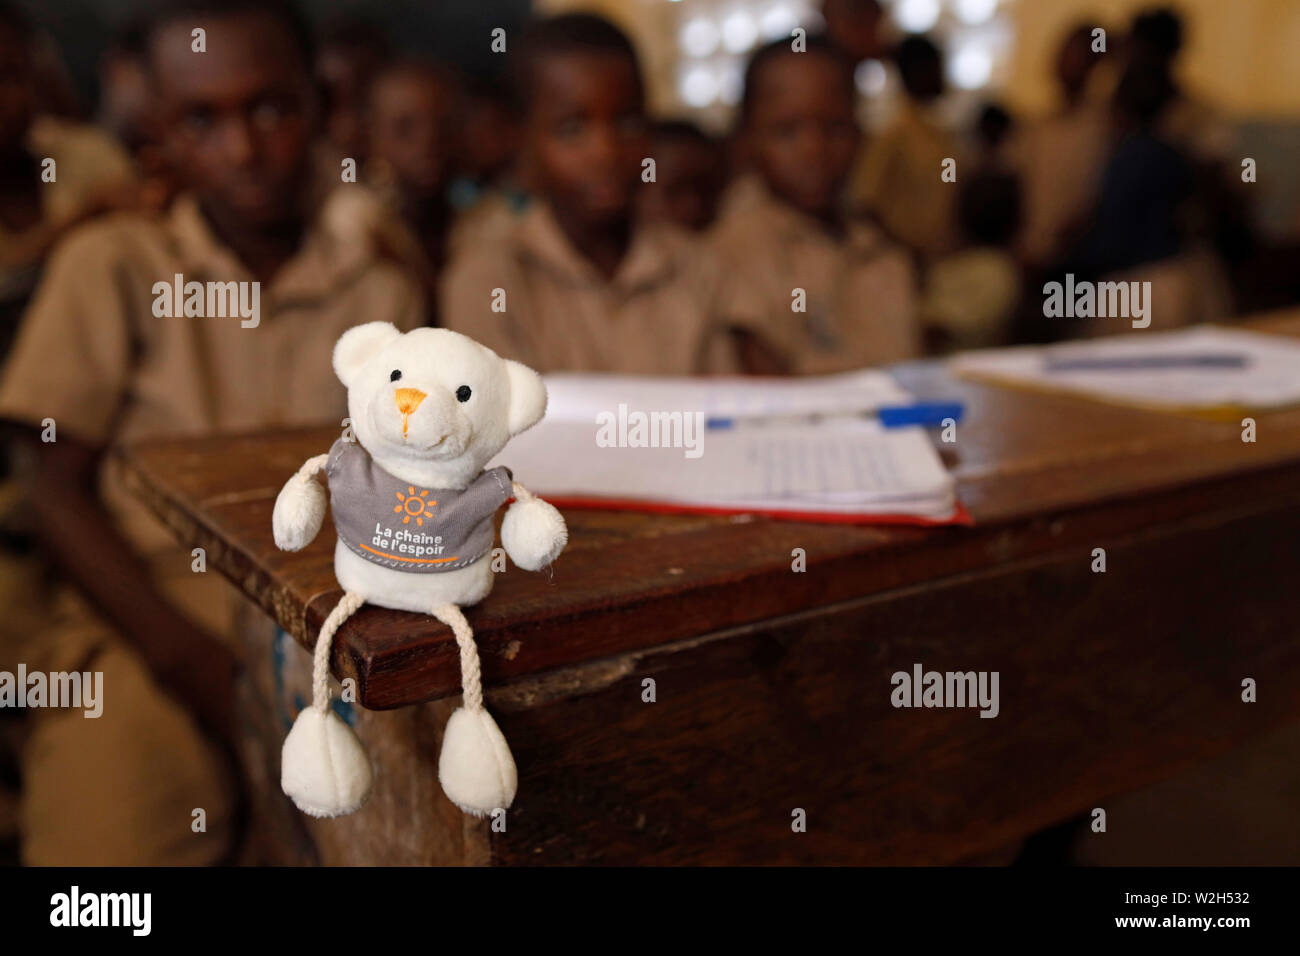 La escuela primaria de África. Los niños patrocinada por la ONG francesa : la Chaine de l'Espoir. El aula. Lome. Togo. Foto de stock